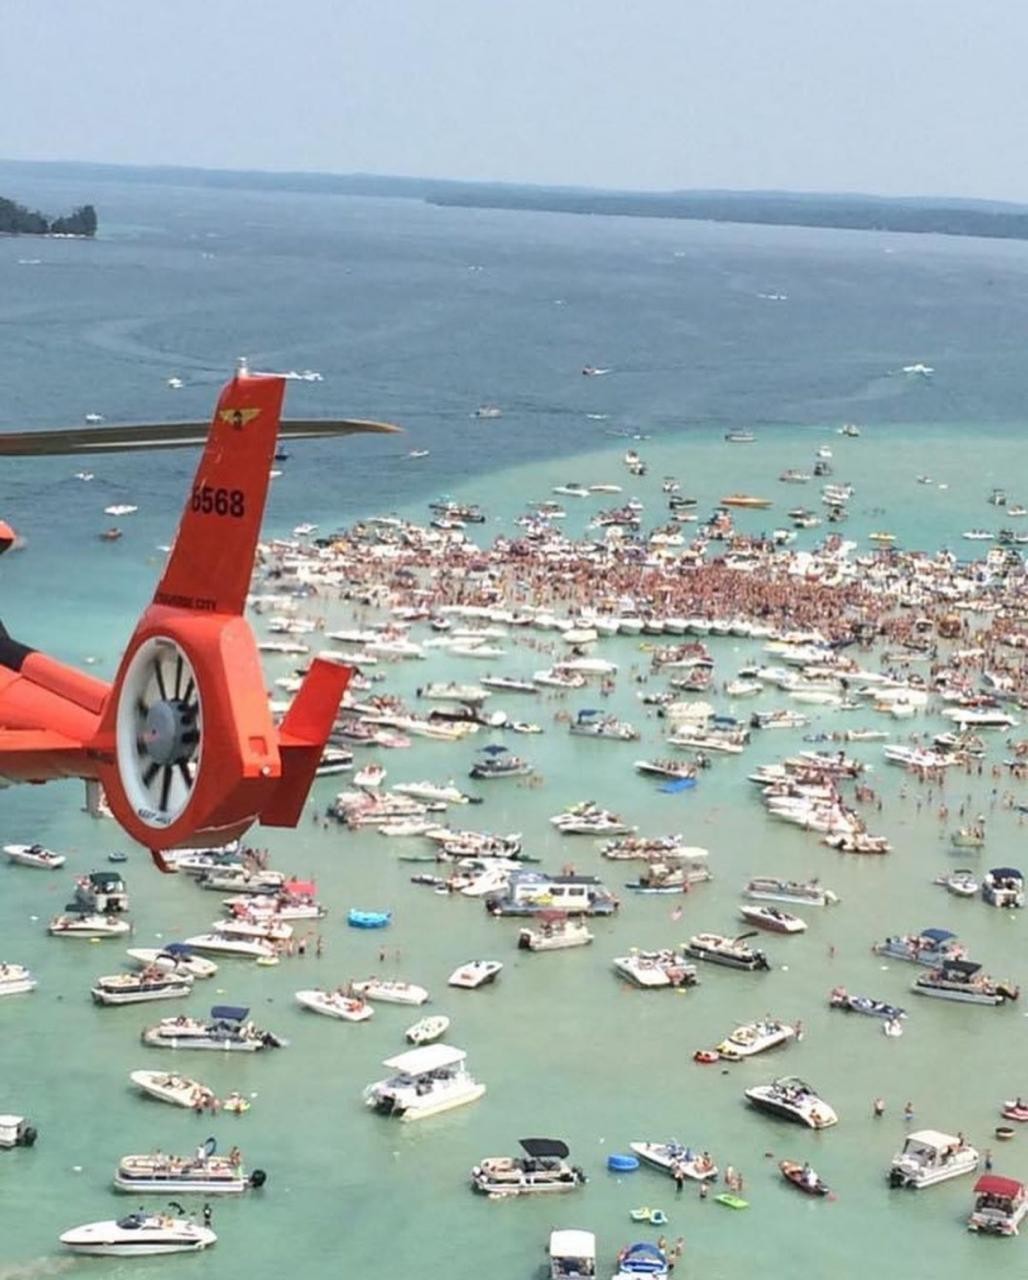 Várias pessoas que comemoraram o 4 de julho em lago lotado no Michigan testam positivo para coronavírus (Foto: Reprodução/Instagram)